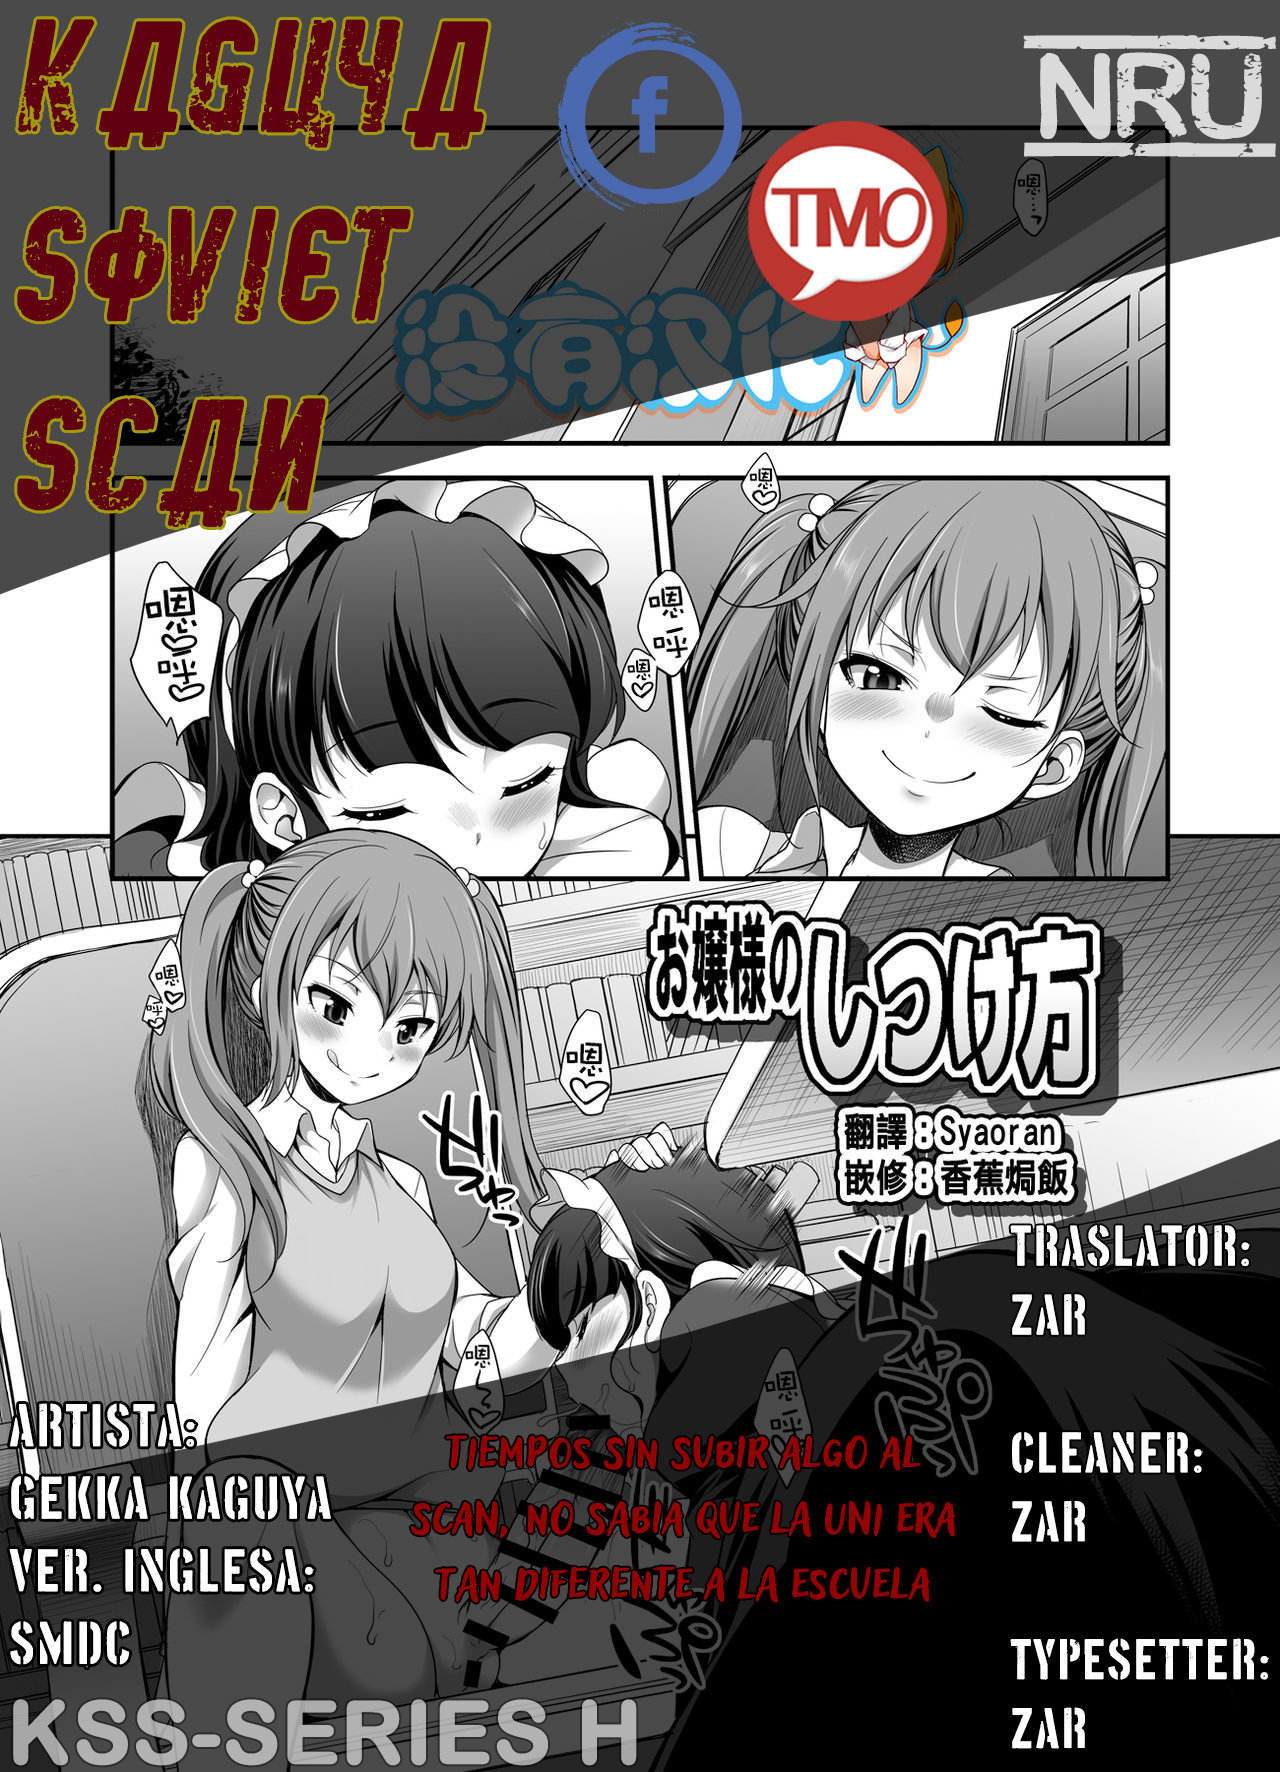 (Gekka Kaguya) Ojou-sama no Shitsukekata (MM 53 _Cavernous spirit girl_ Vol 53) - 0